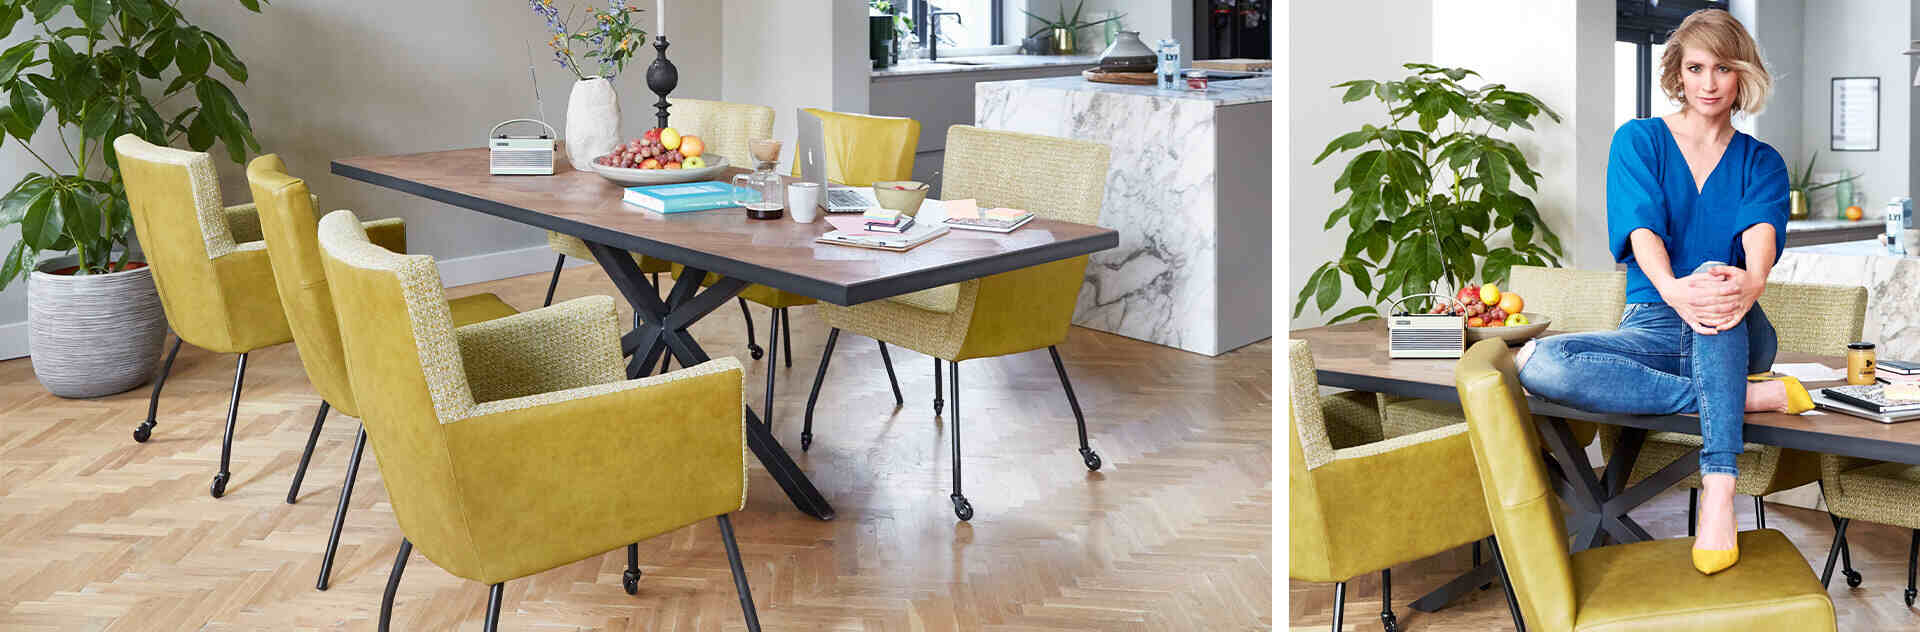 Mento Taranto tafel met gele eetkamerstoelen